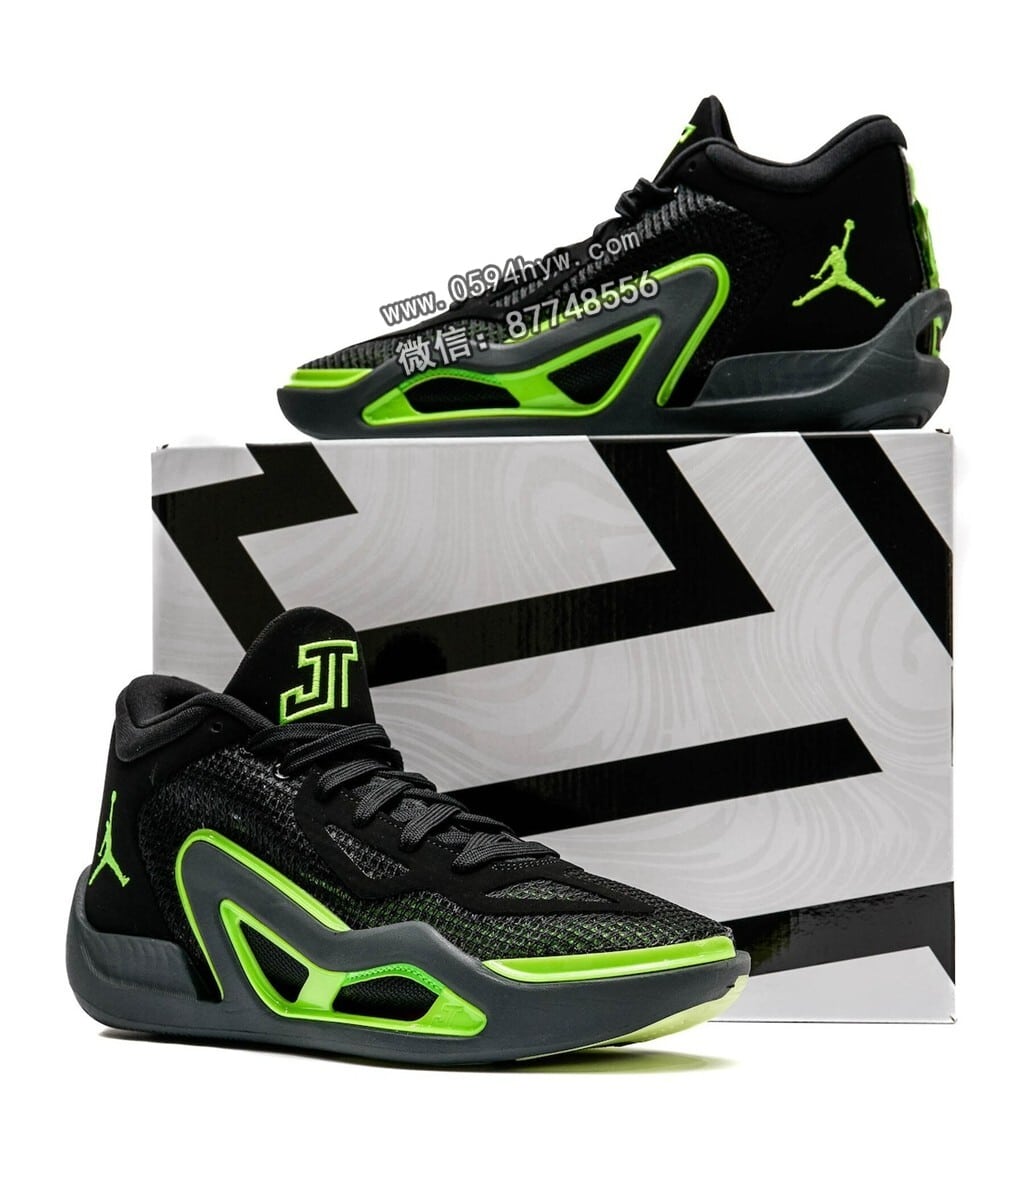 Tatum 1, Jordan Brand, Jordan, DZ3324-003, Air Jordan 2, Air Jordan - 独一无二的黑绿外观！全新Tatum 1配色正式亮相！